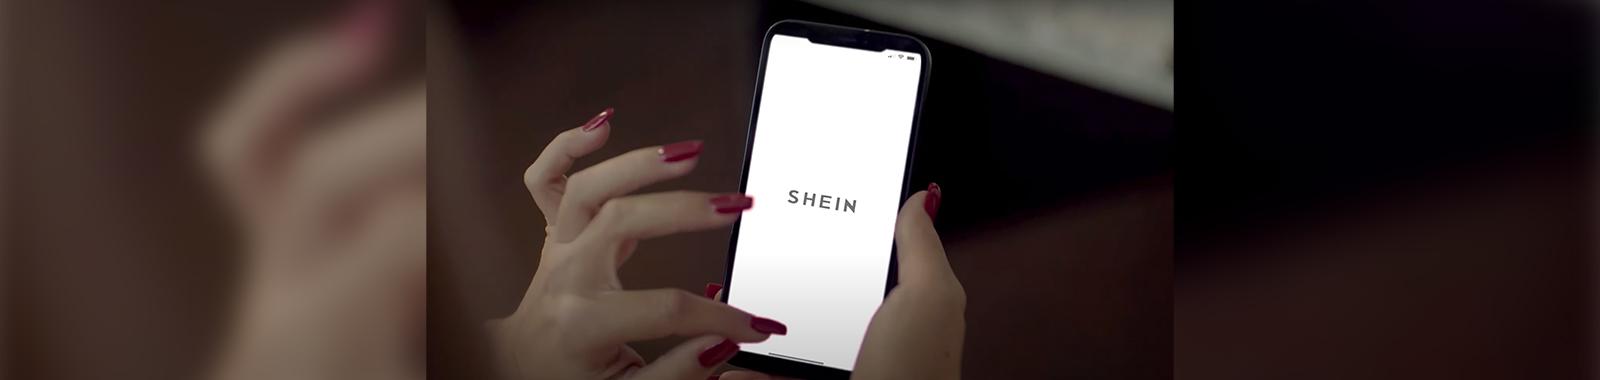 SHEINとTemu、中国発EC2社が米で法廷バトル。デジタルファストファッションをめぐる覇権争いが激化